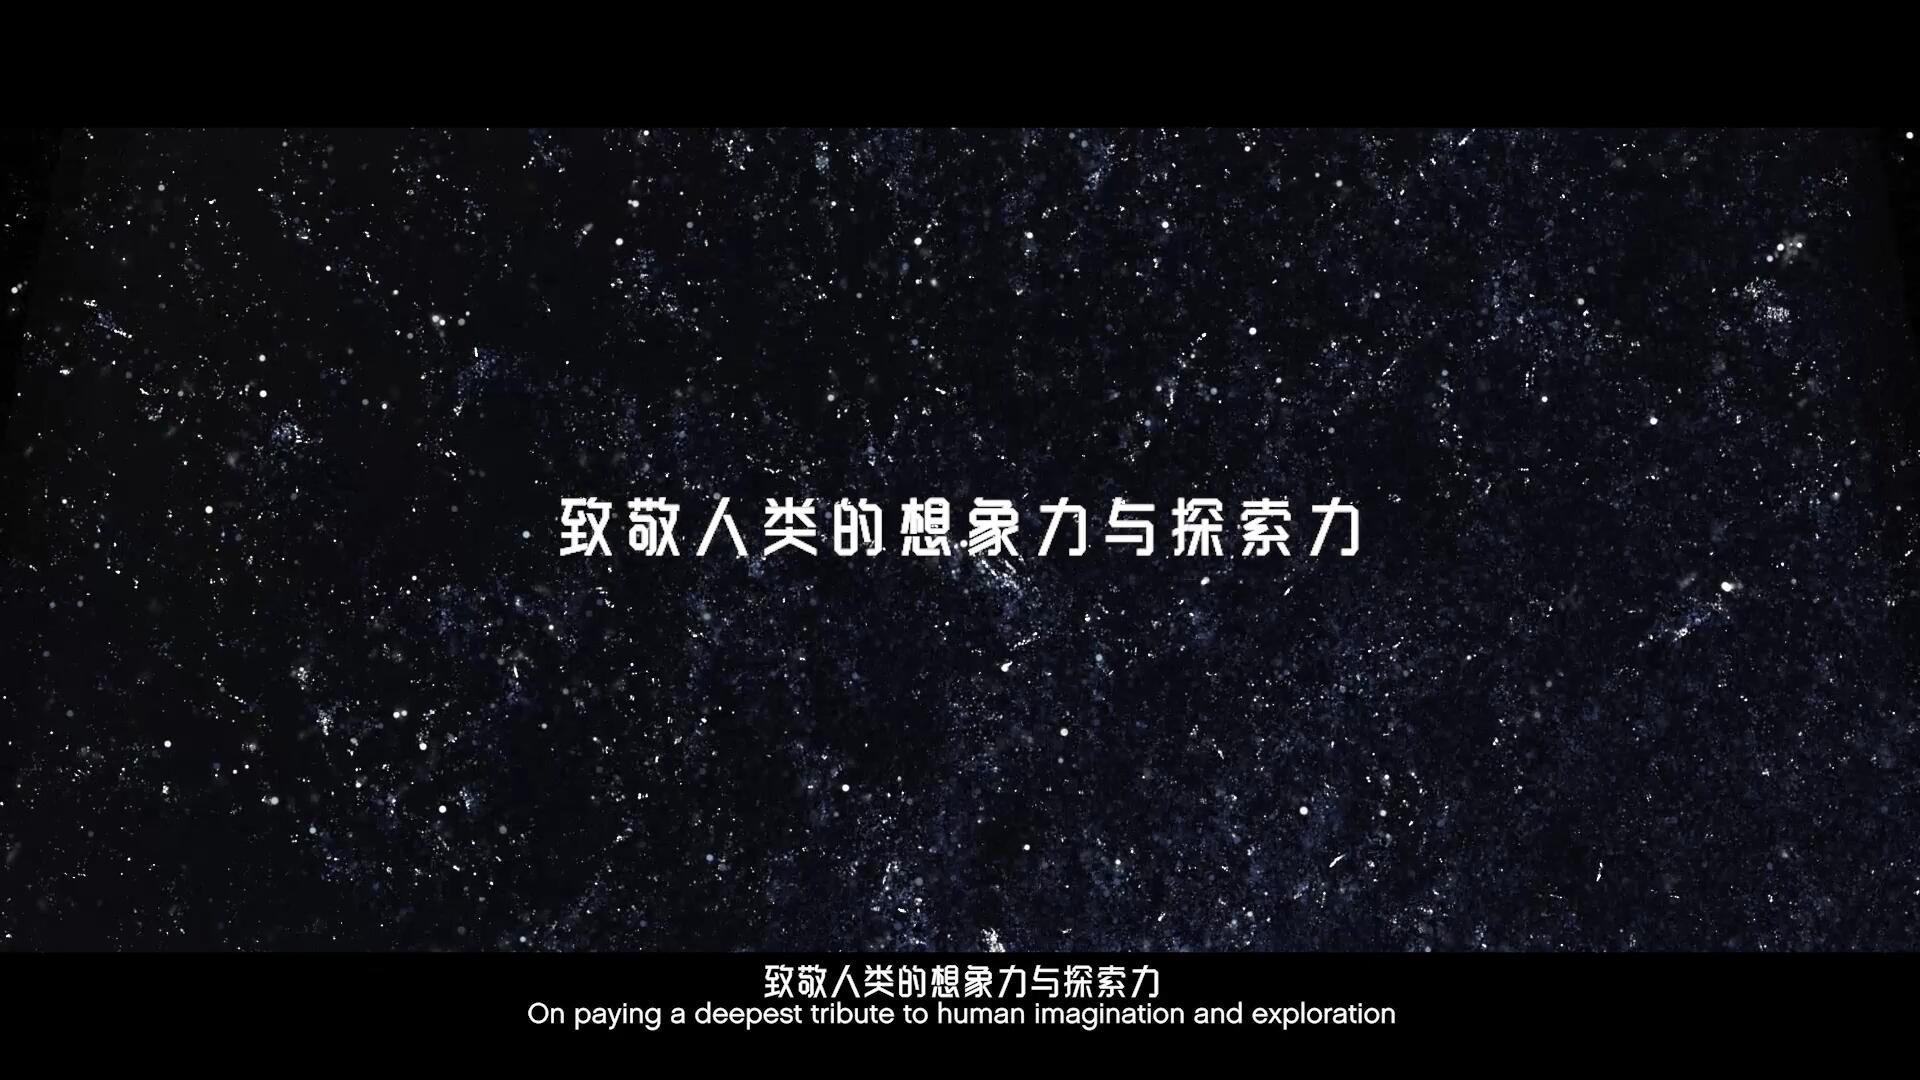 未来局X乐高X刘慈欣 “超级探索力”创意大片